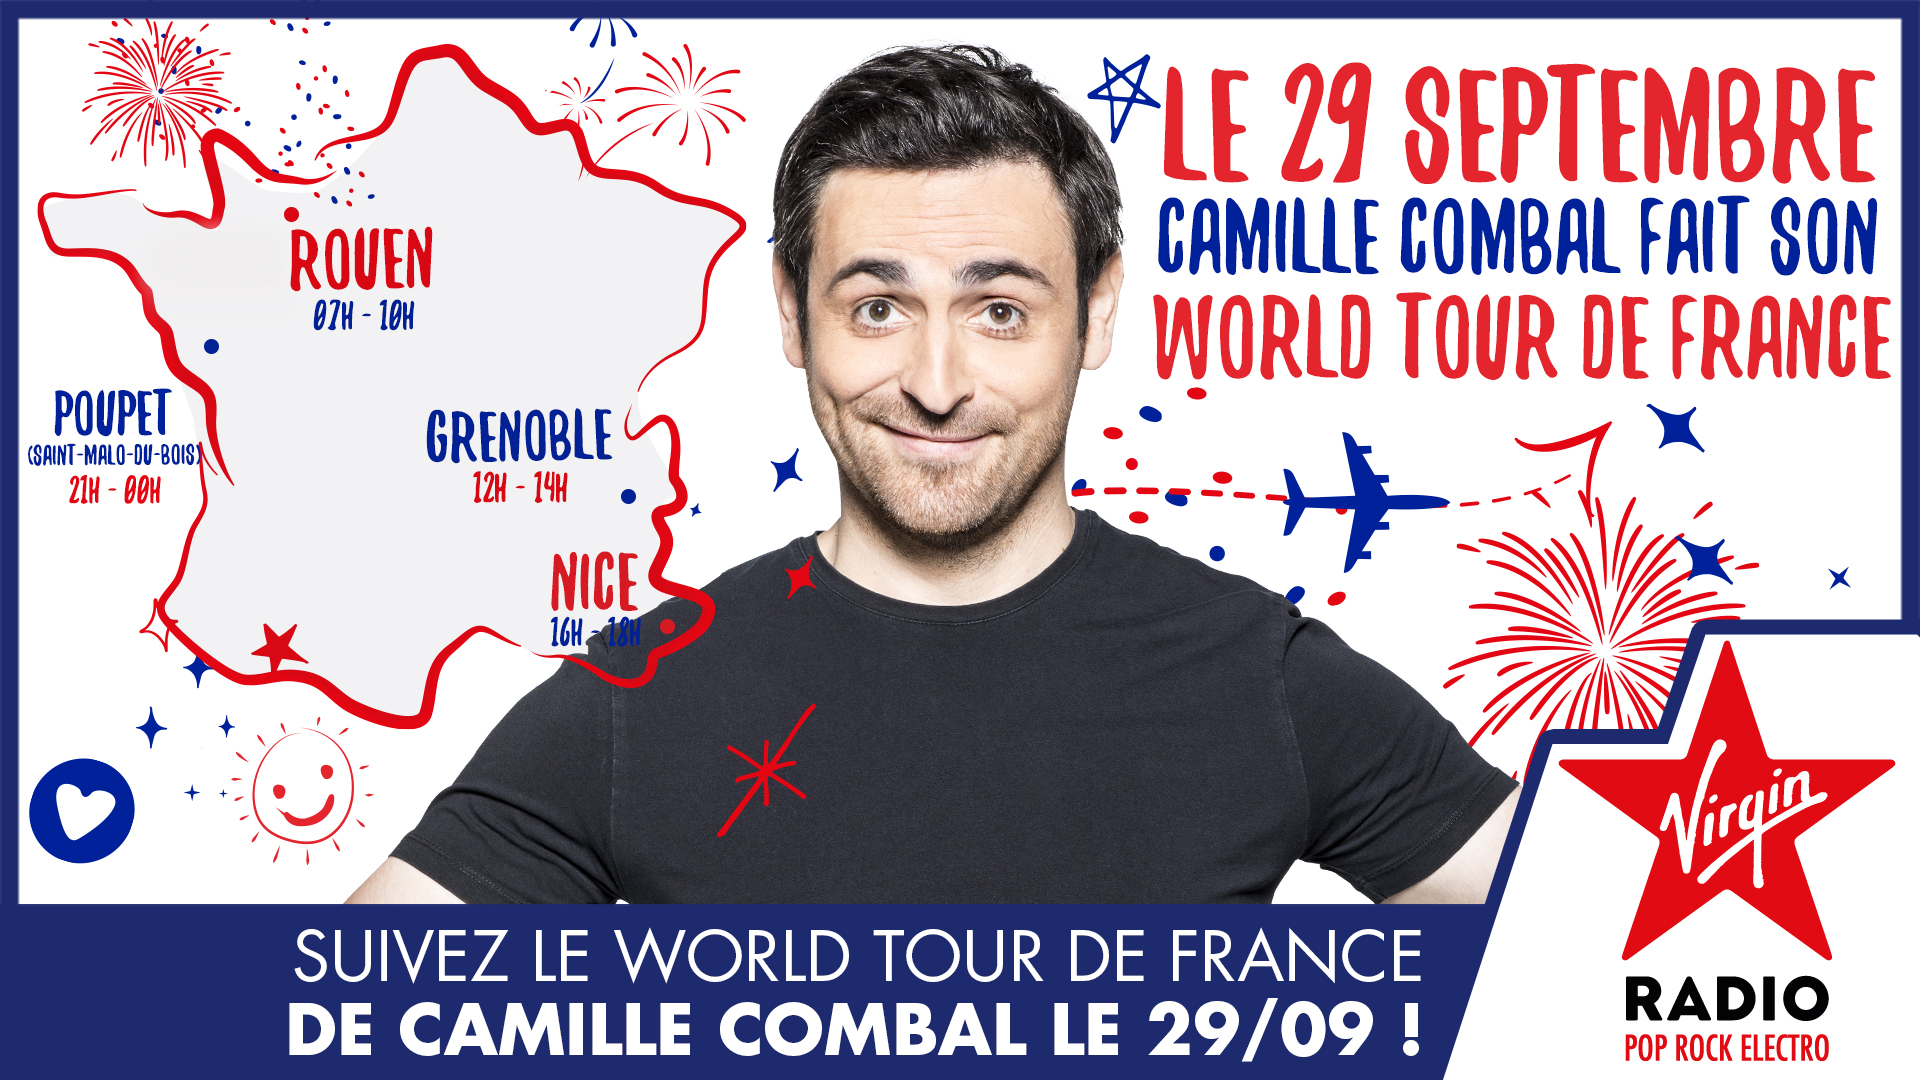 Un nouveau "World Tour de France" pour Camille Combal